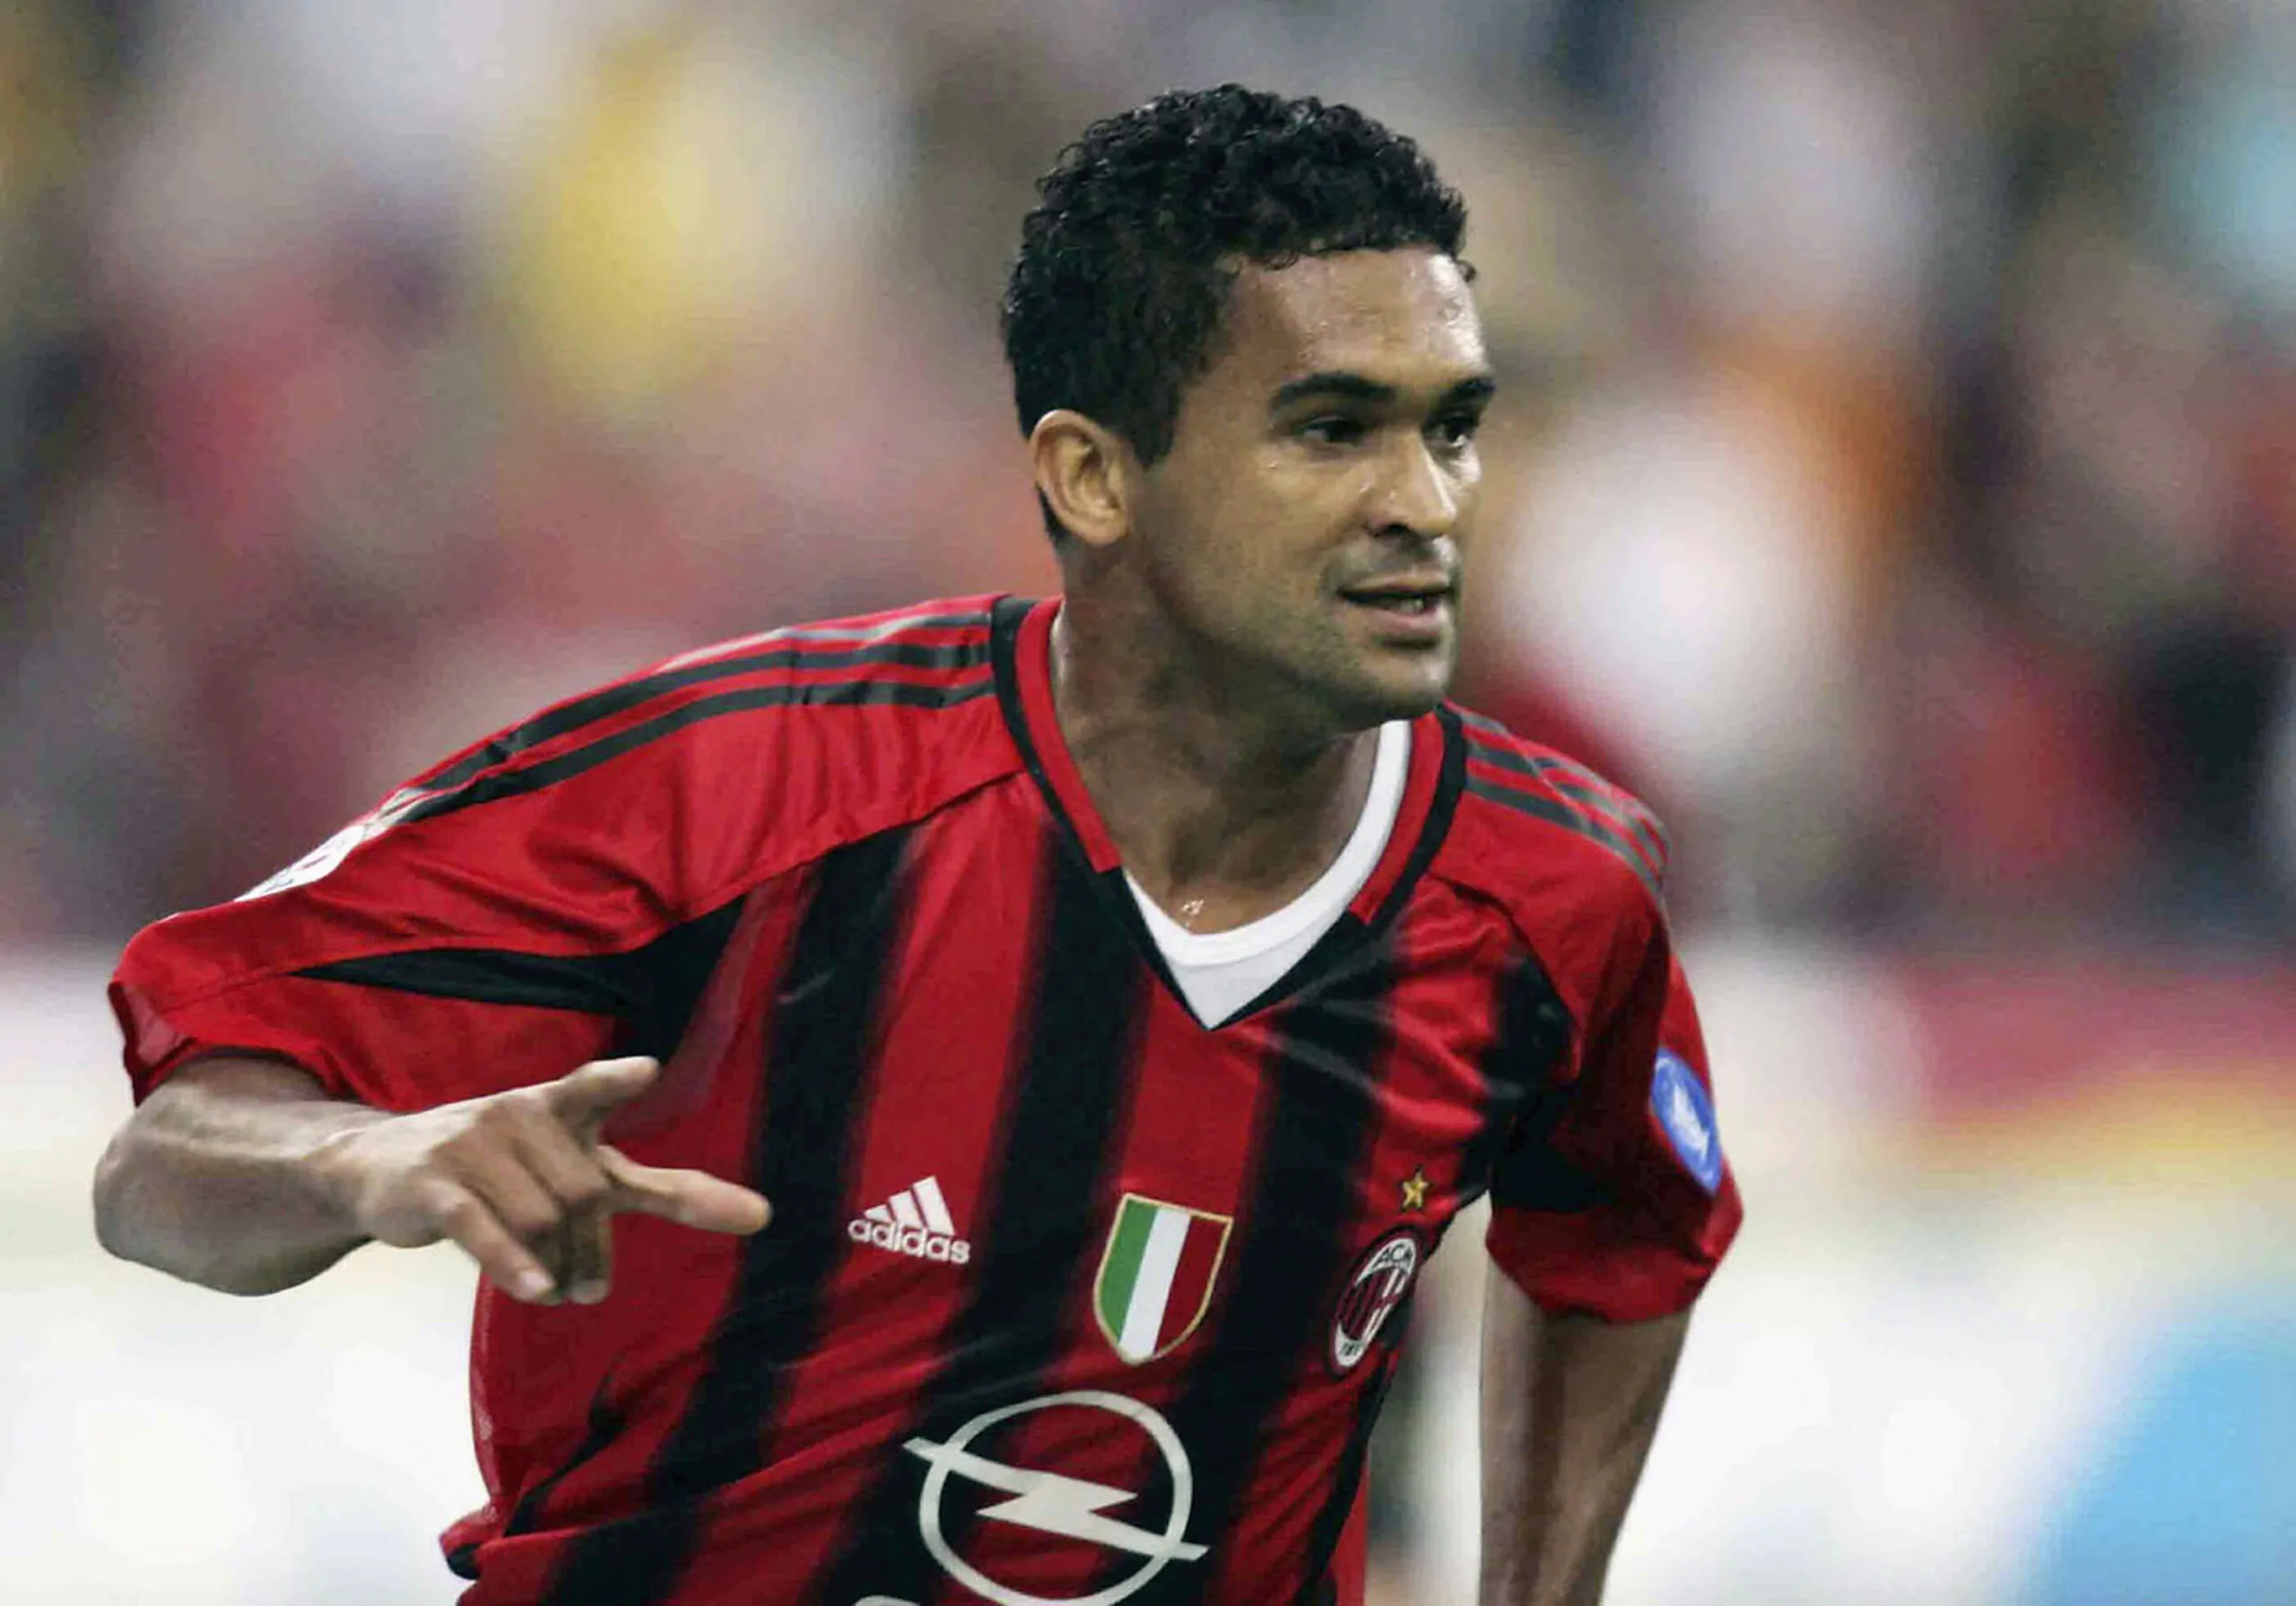 Serginho non ha dubbi: “La vittoria del Milan è soprattutto merito loro!”